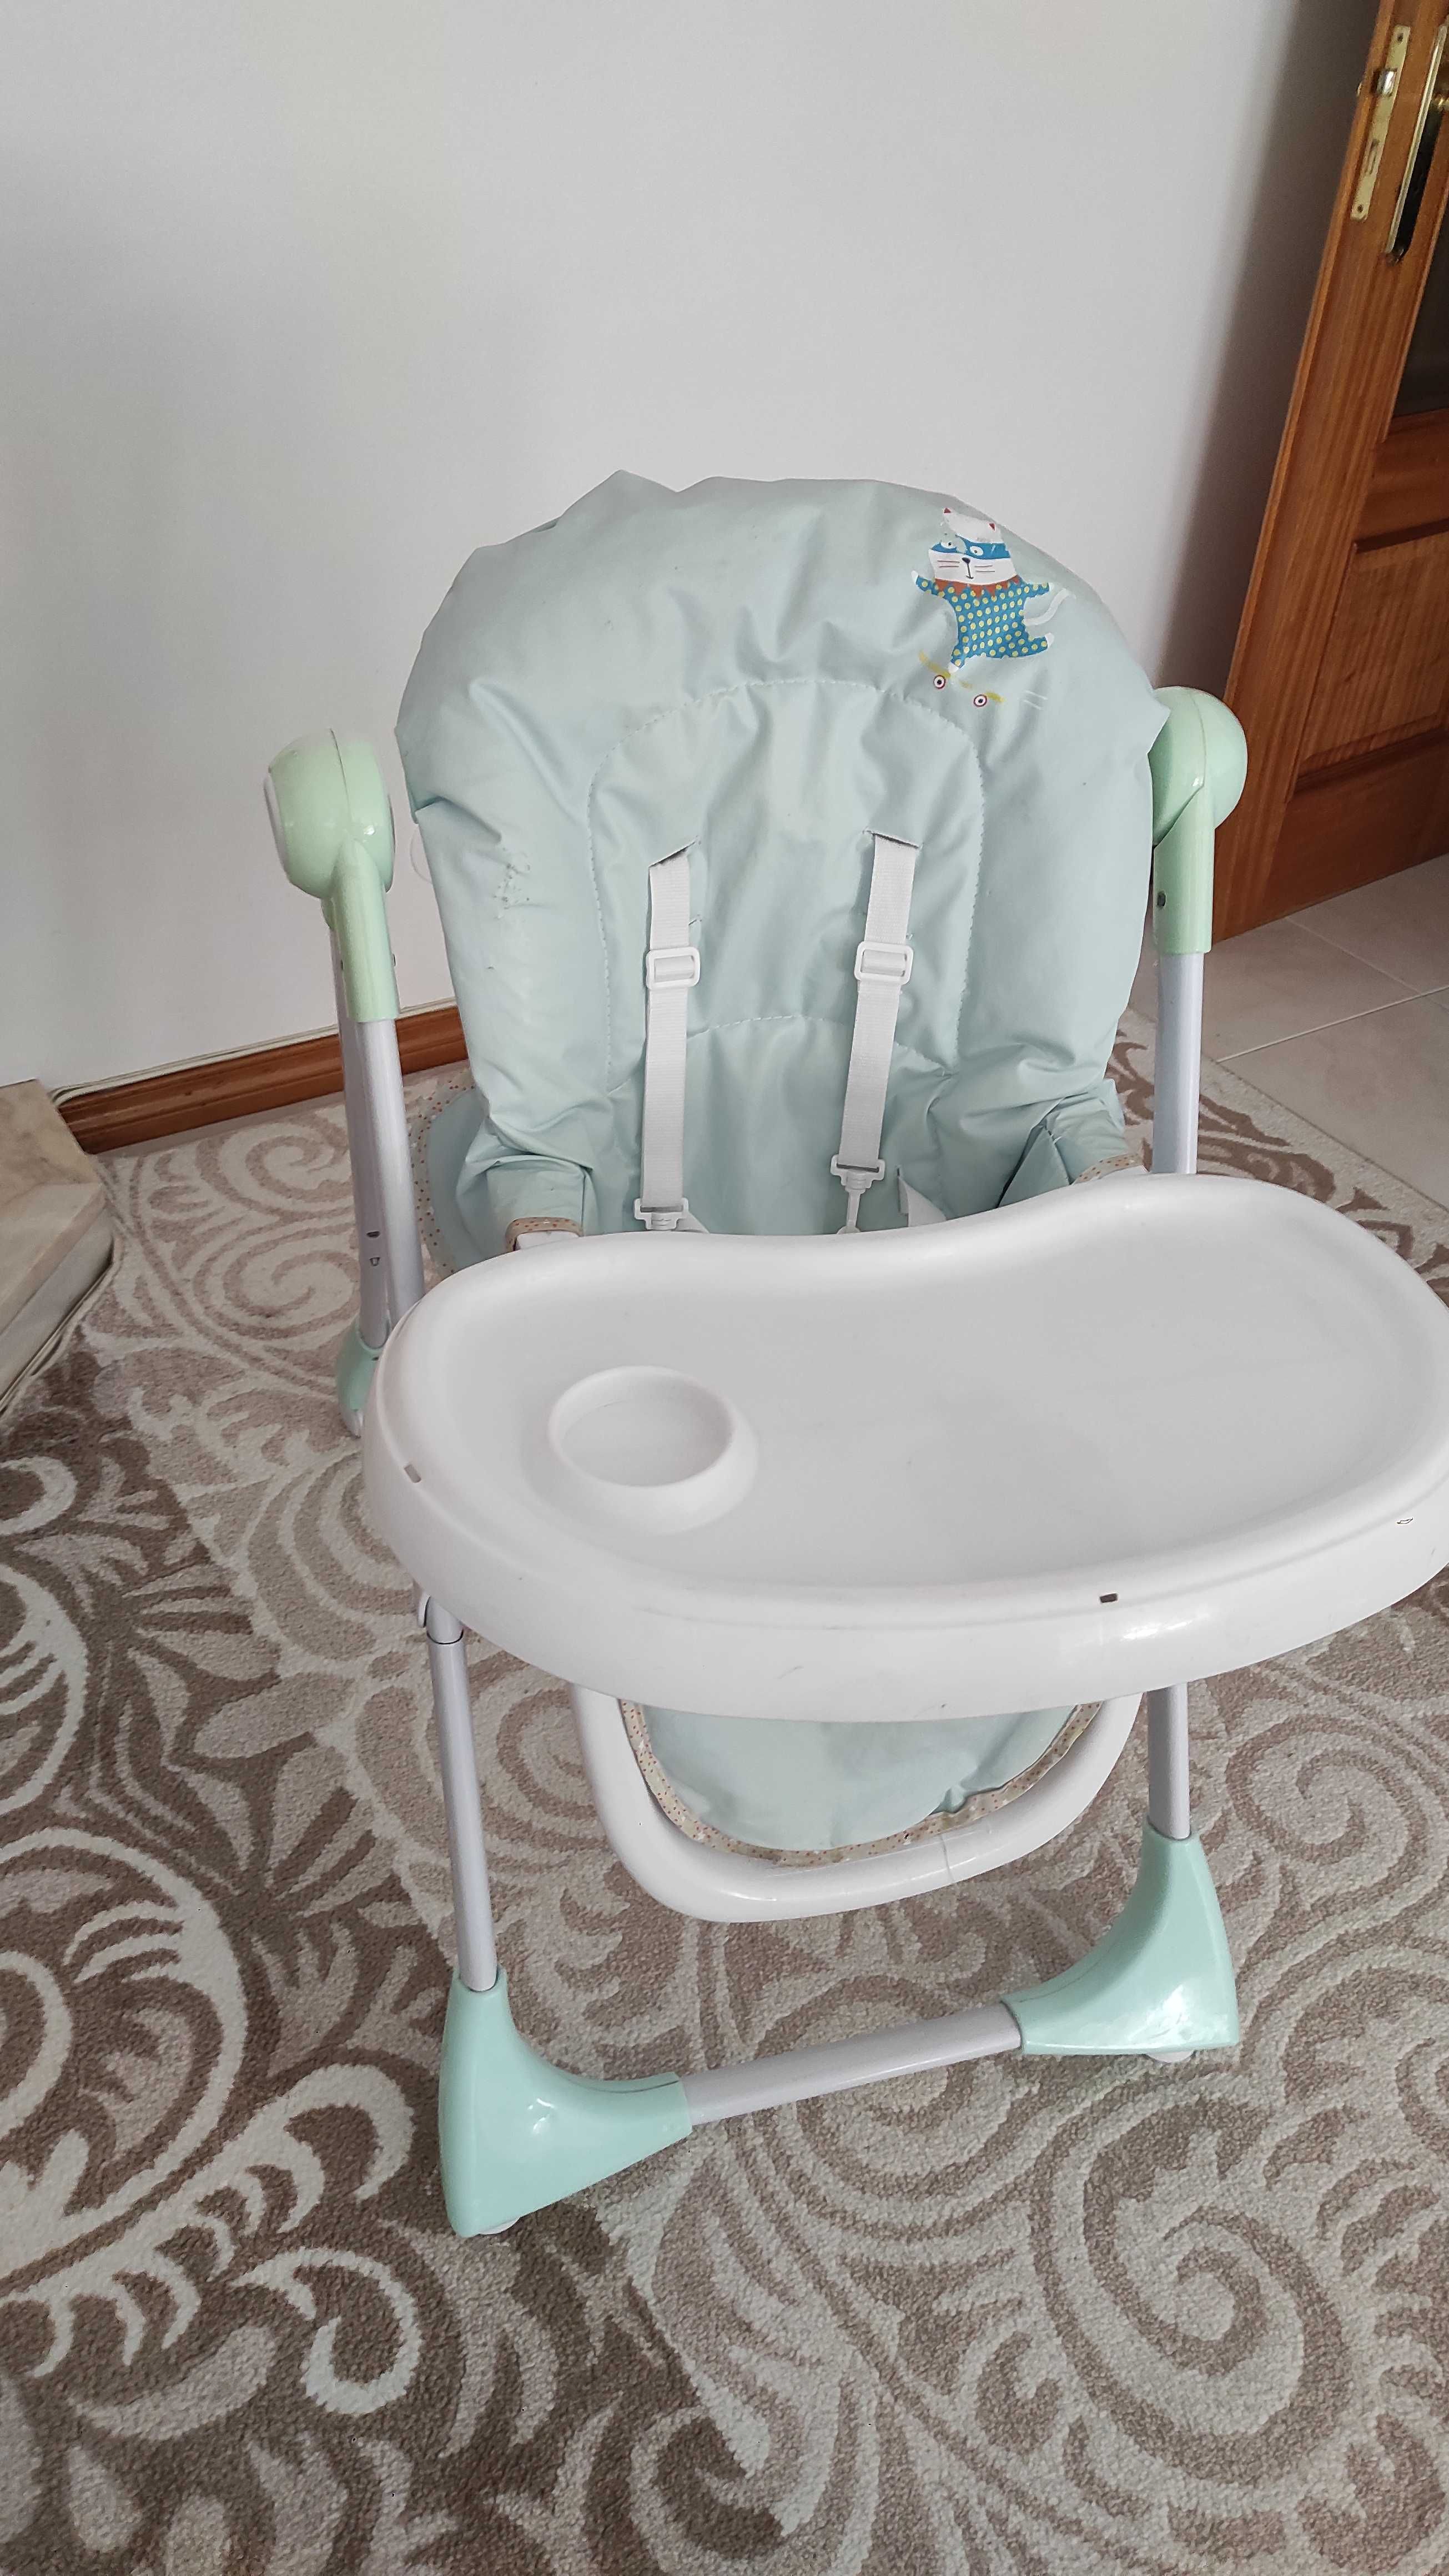 Cadeira para bebê